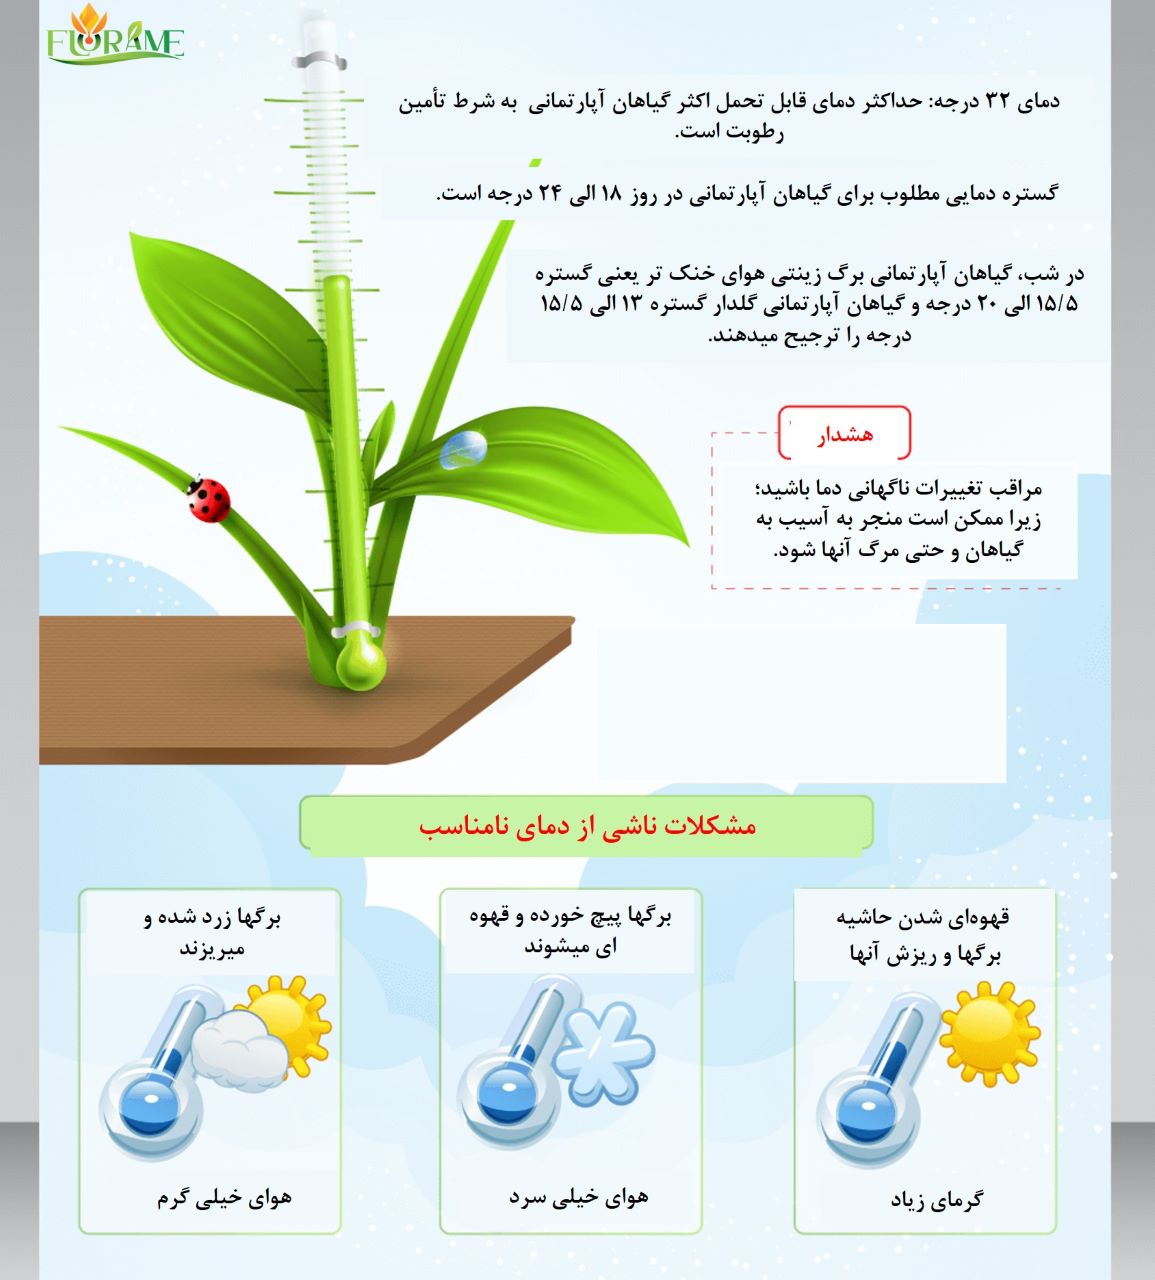 اینفوگرافی دمای مناسب گیاهان آپارتمانی و عوارض ناشی از دمای نامناسب